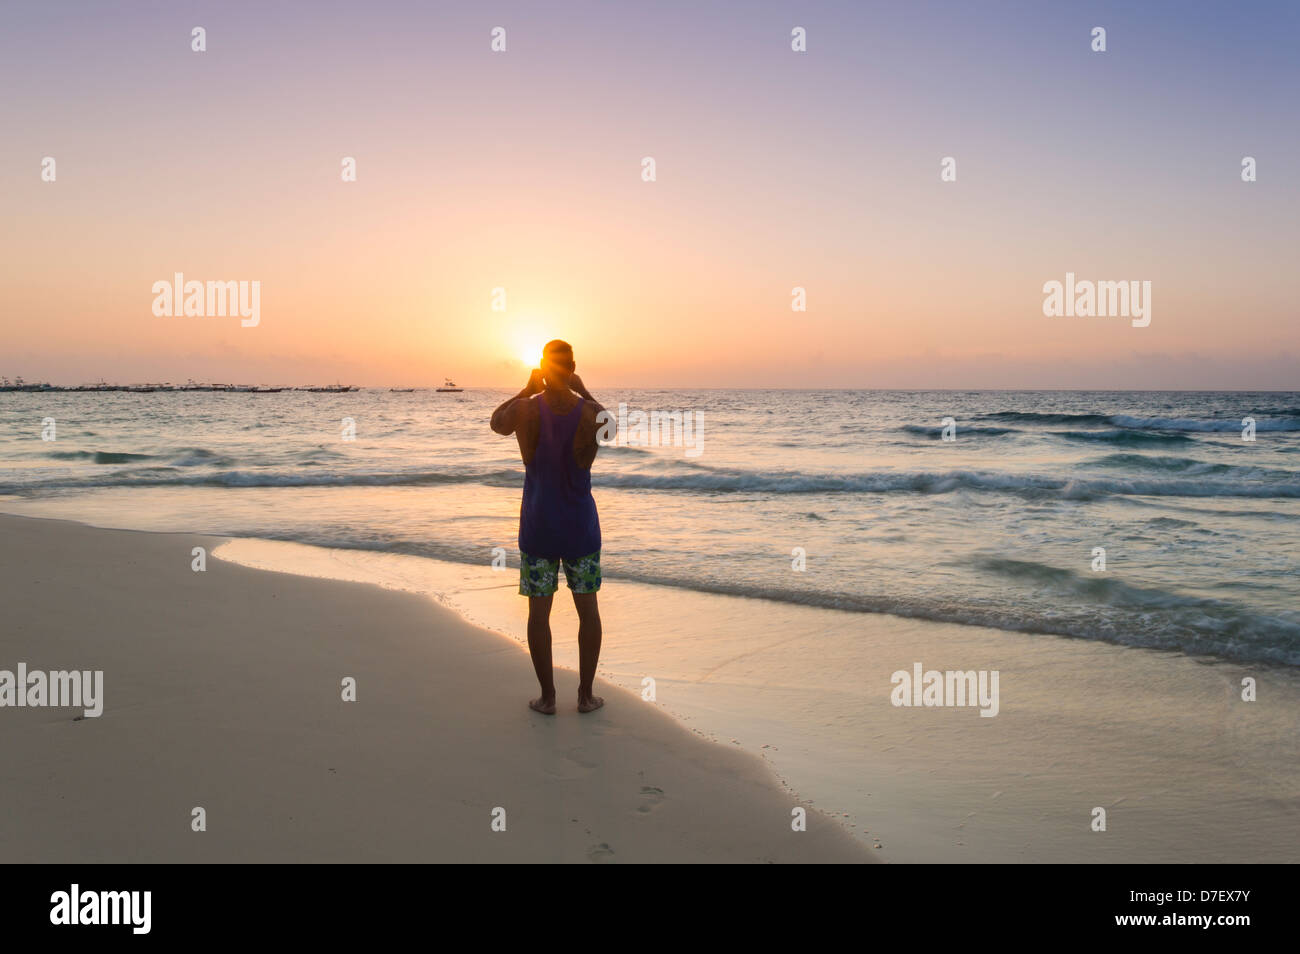 Hombre de pie en una playa en silueta fotografiando al amanecer. Foto de stock